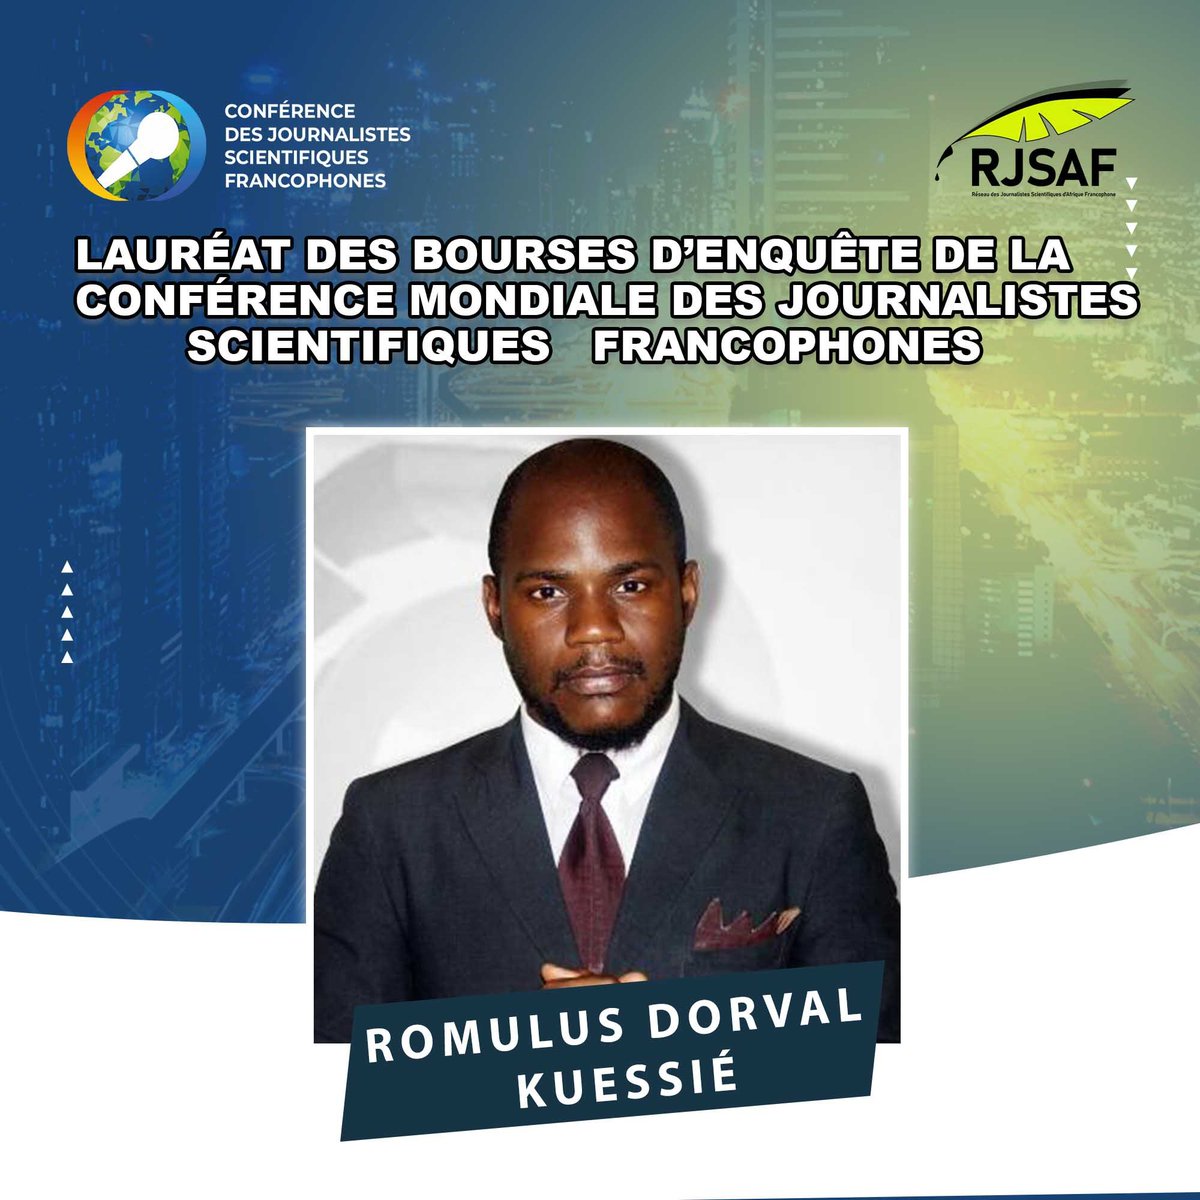 Romulus Dorval Kuessié est un journaliste scientifique bilingue et vérificateur de faits. Producteur d'une émission scientifique sur la radio Kalak FM, il aborde les questions de santé et de dév. durable à l'échelle du continent. Il est l'un des lauréats de la bourse du RJSAF.